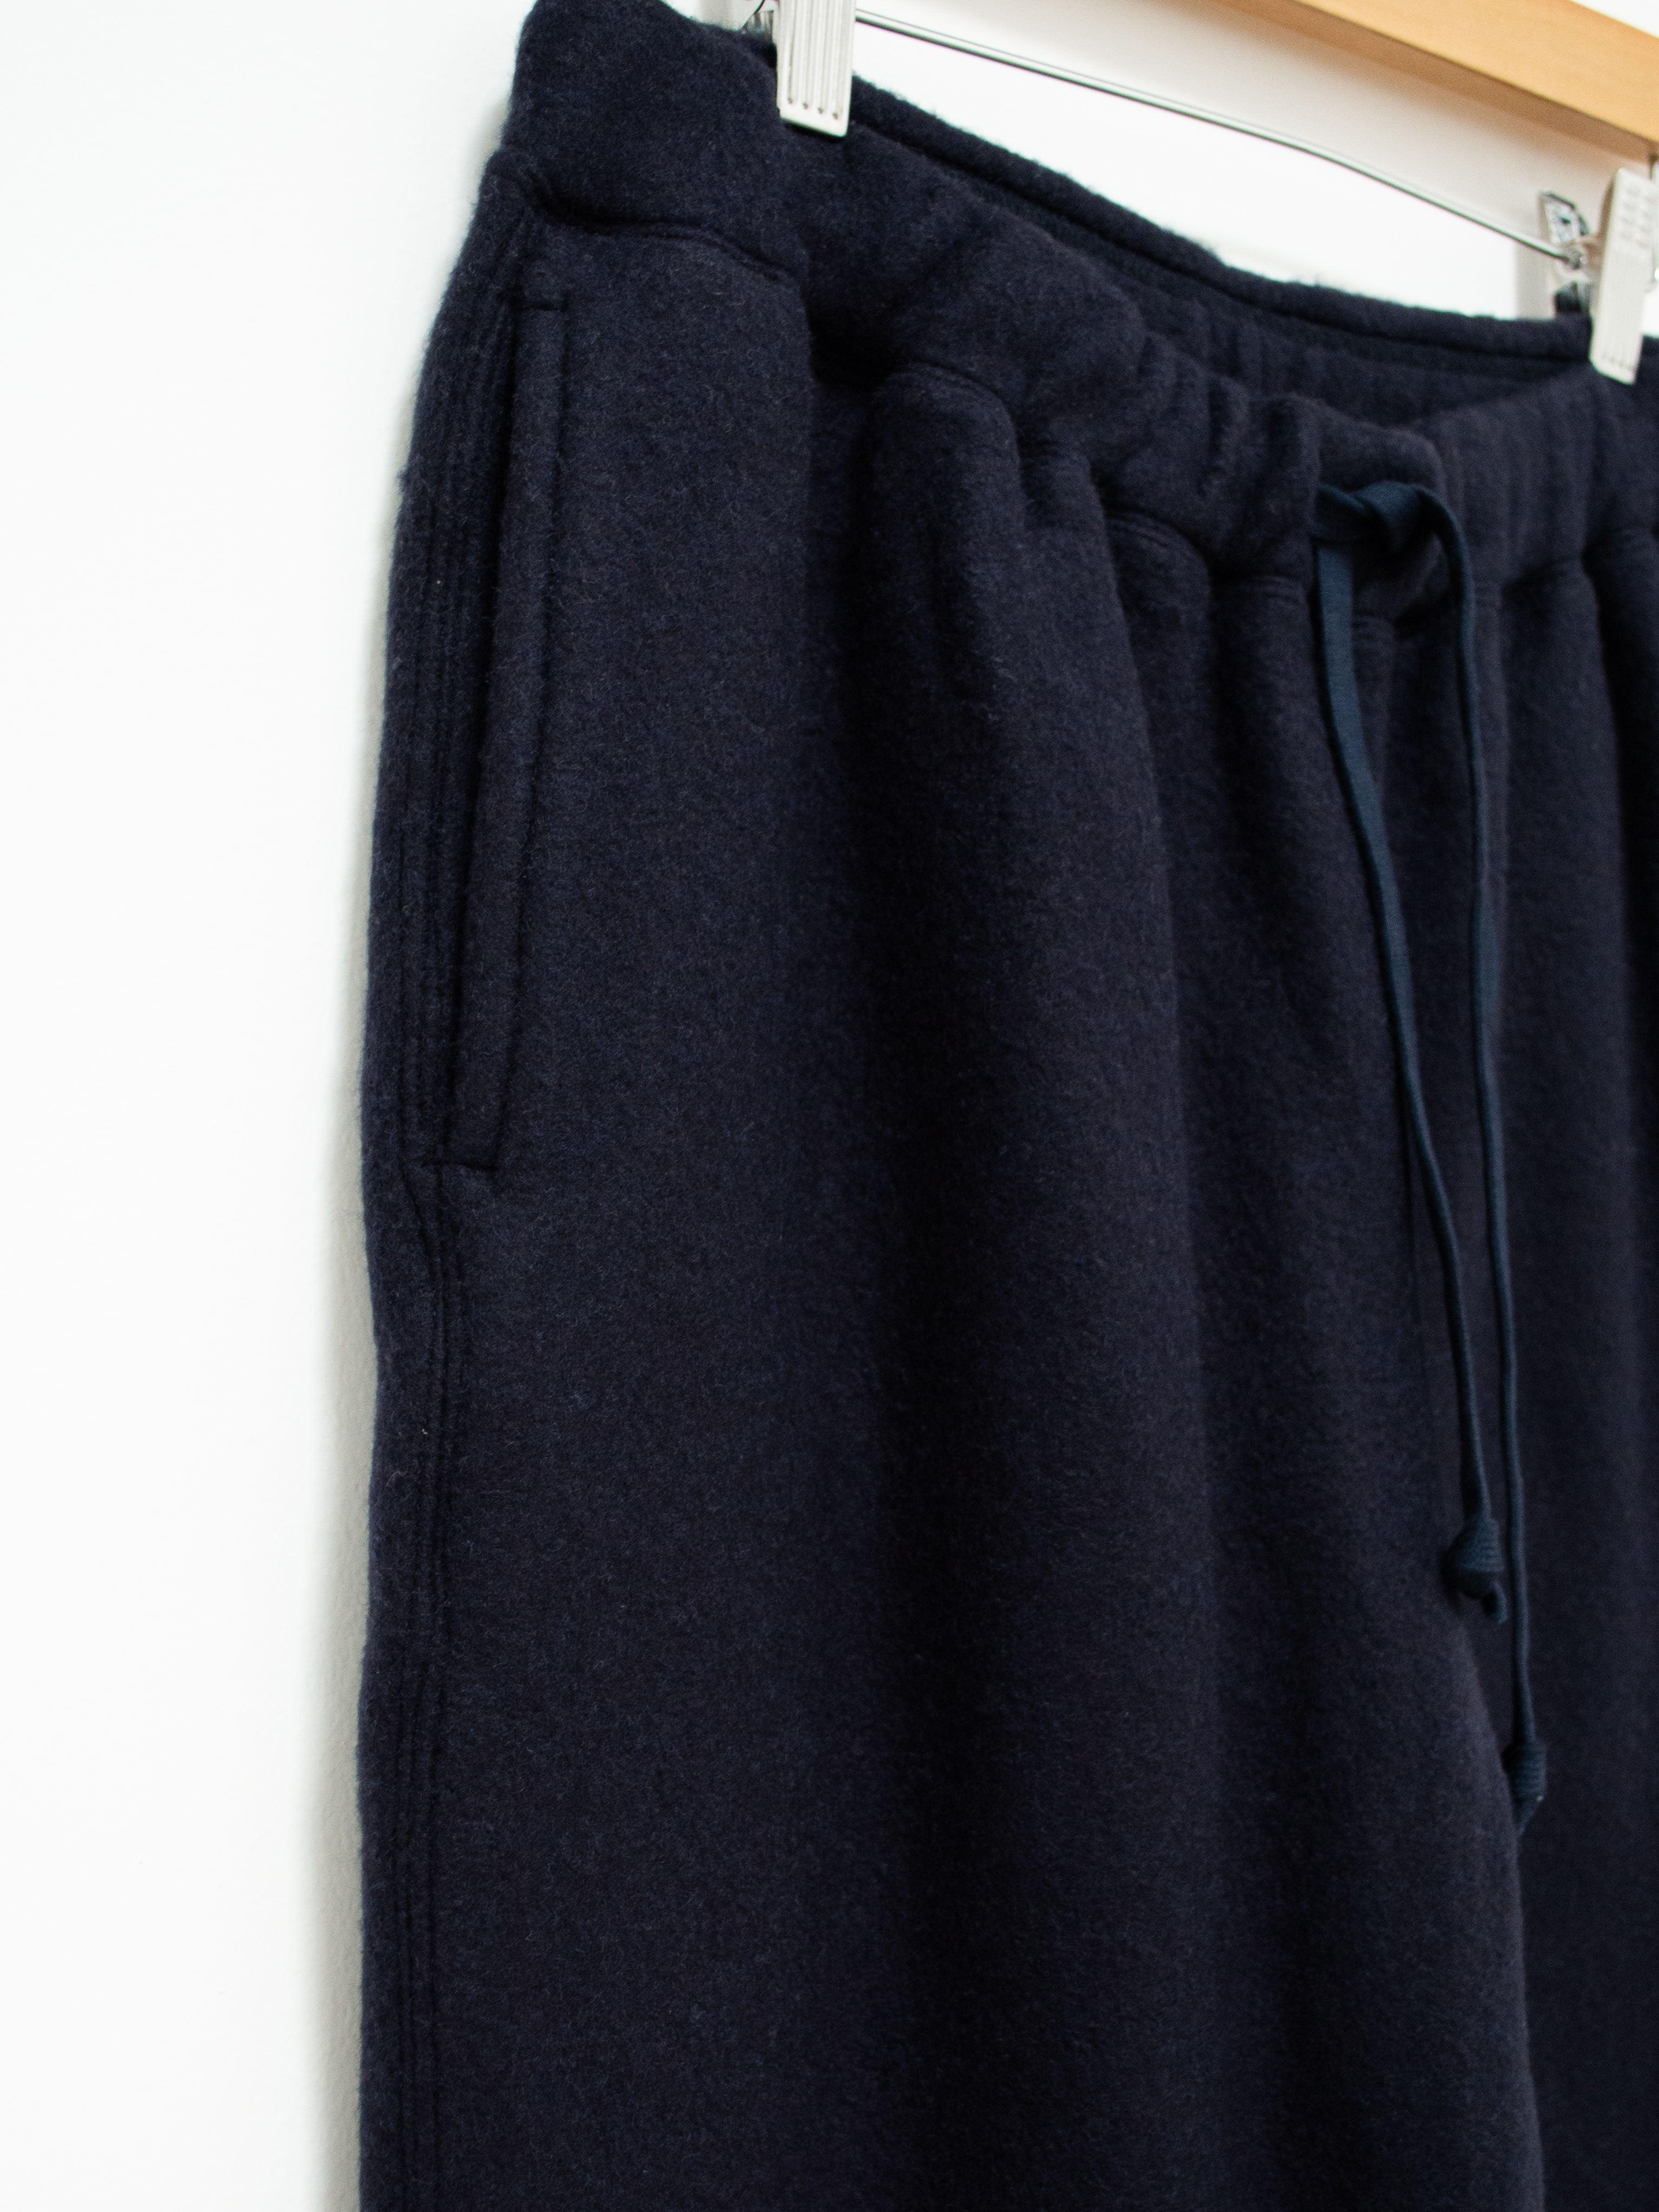 Namu Shop - ts(s) Wool Jersey Cuffed Sweatpants - Navy